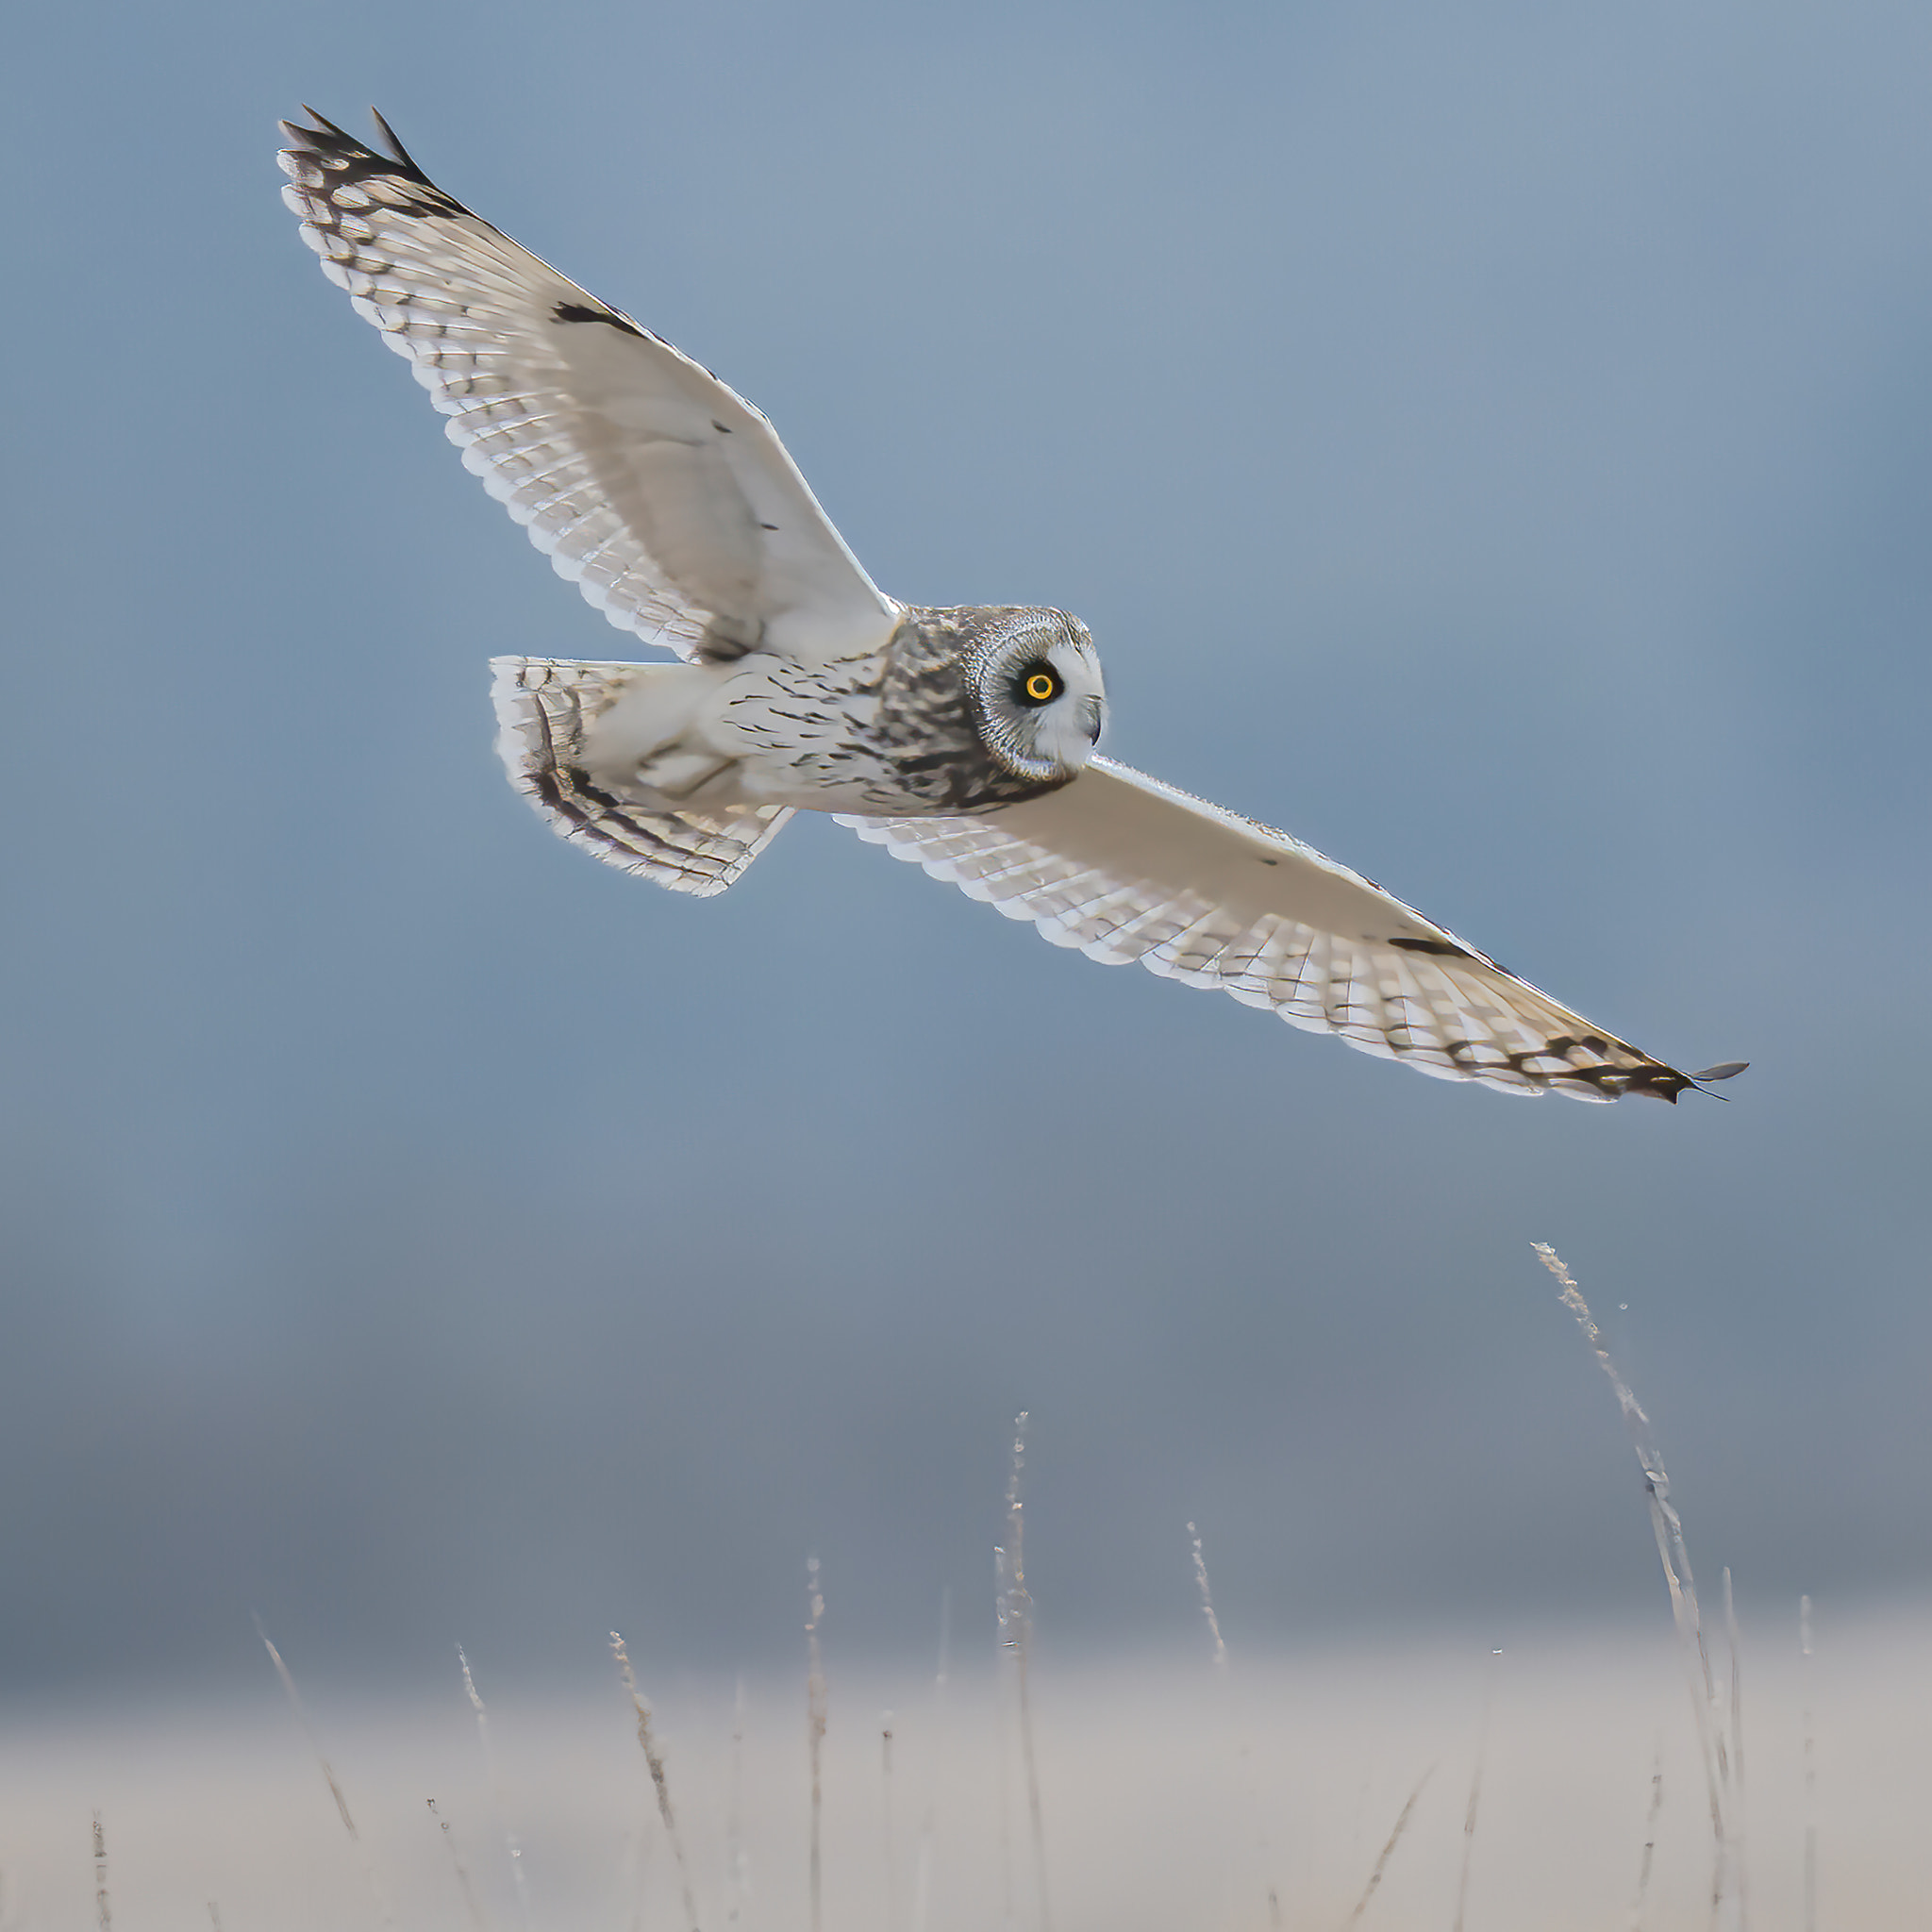 Short-eared Owl in Flight